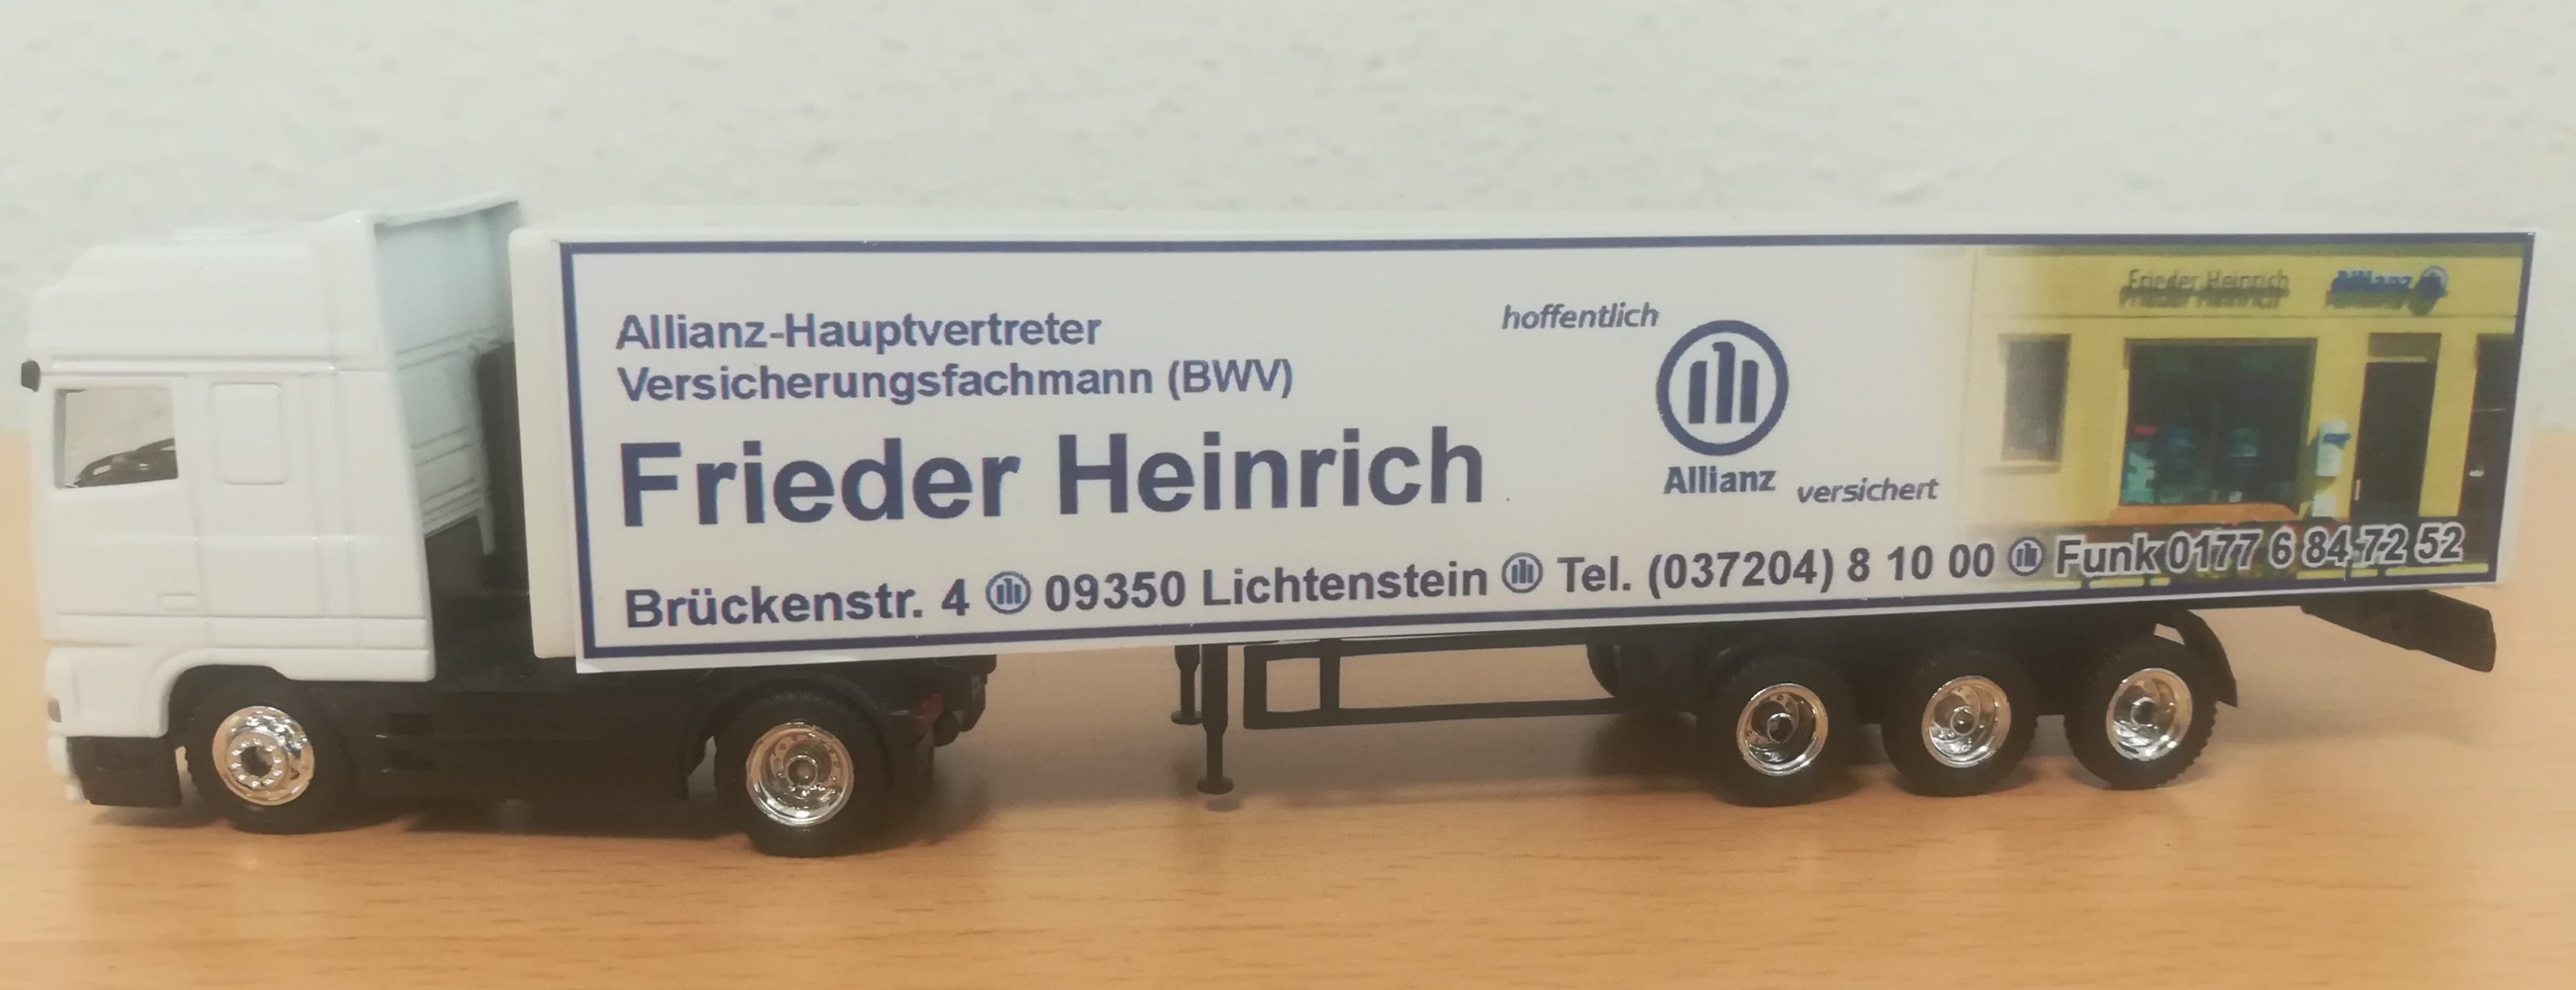 Allianz Versicherung Frieder Heinrich Lichtenstein/Sachsen - Werbetruck